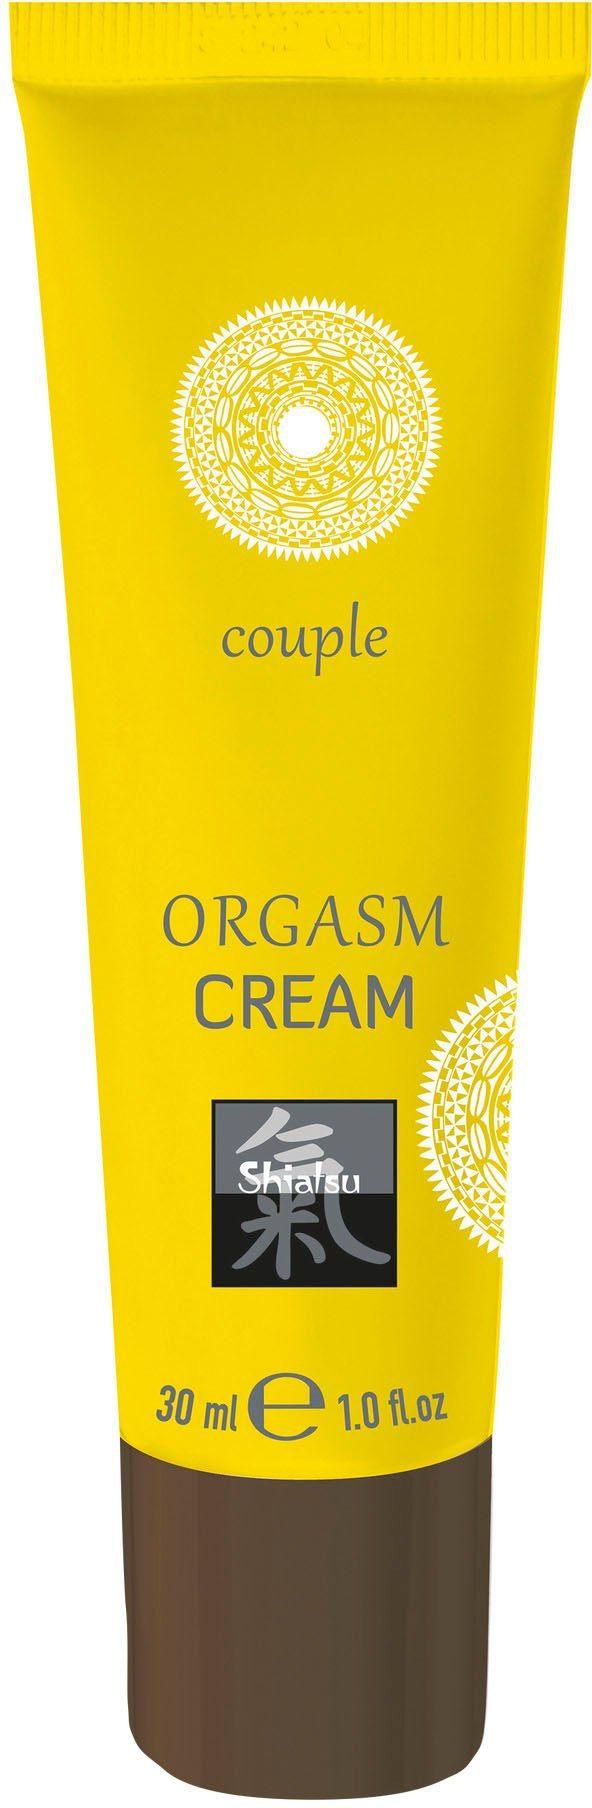 Intimcreme, Orgasm Shiatsu Cream